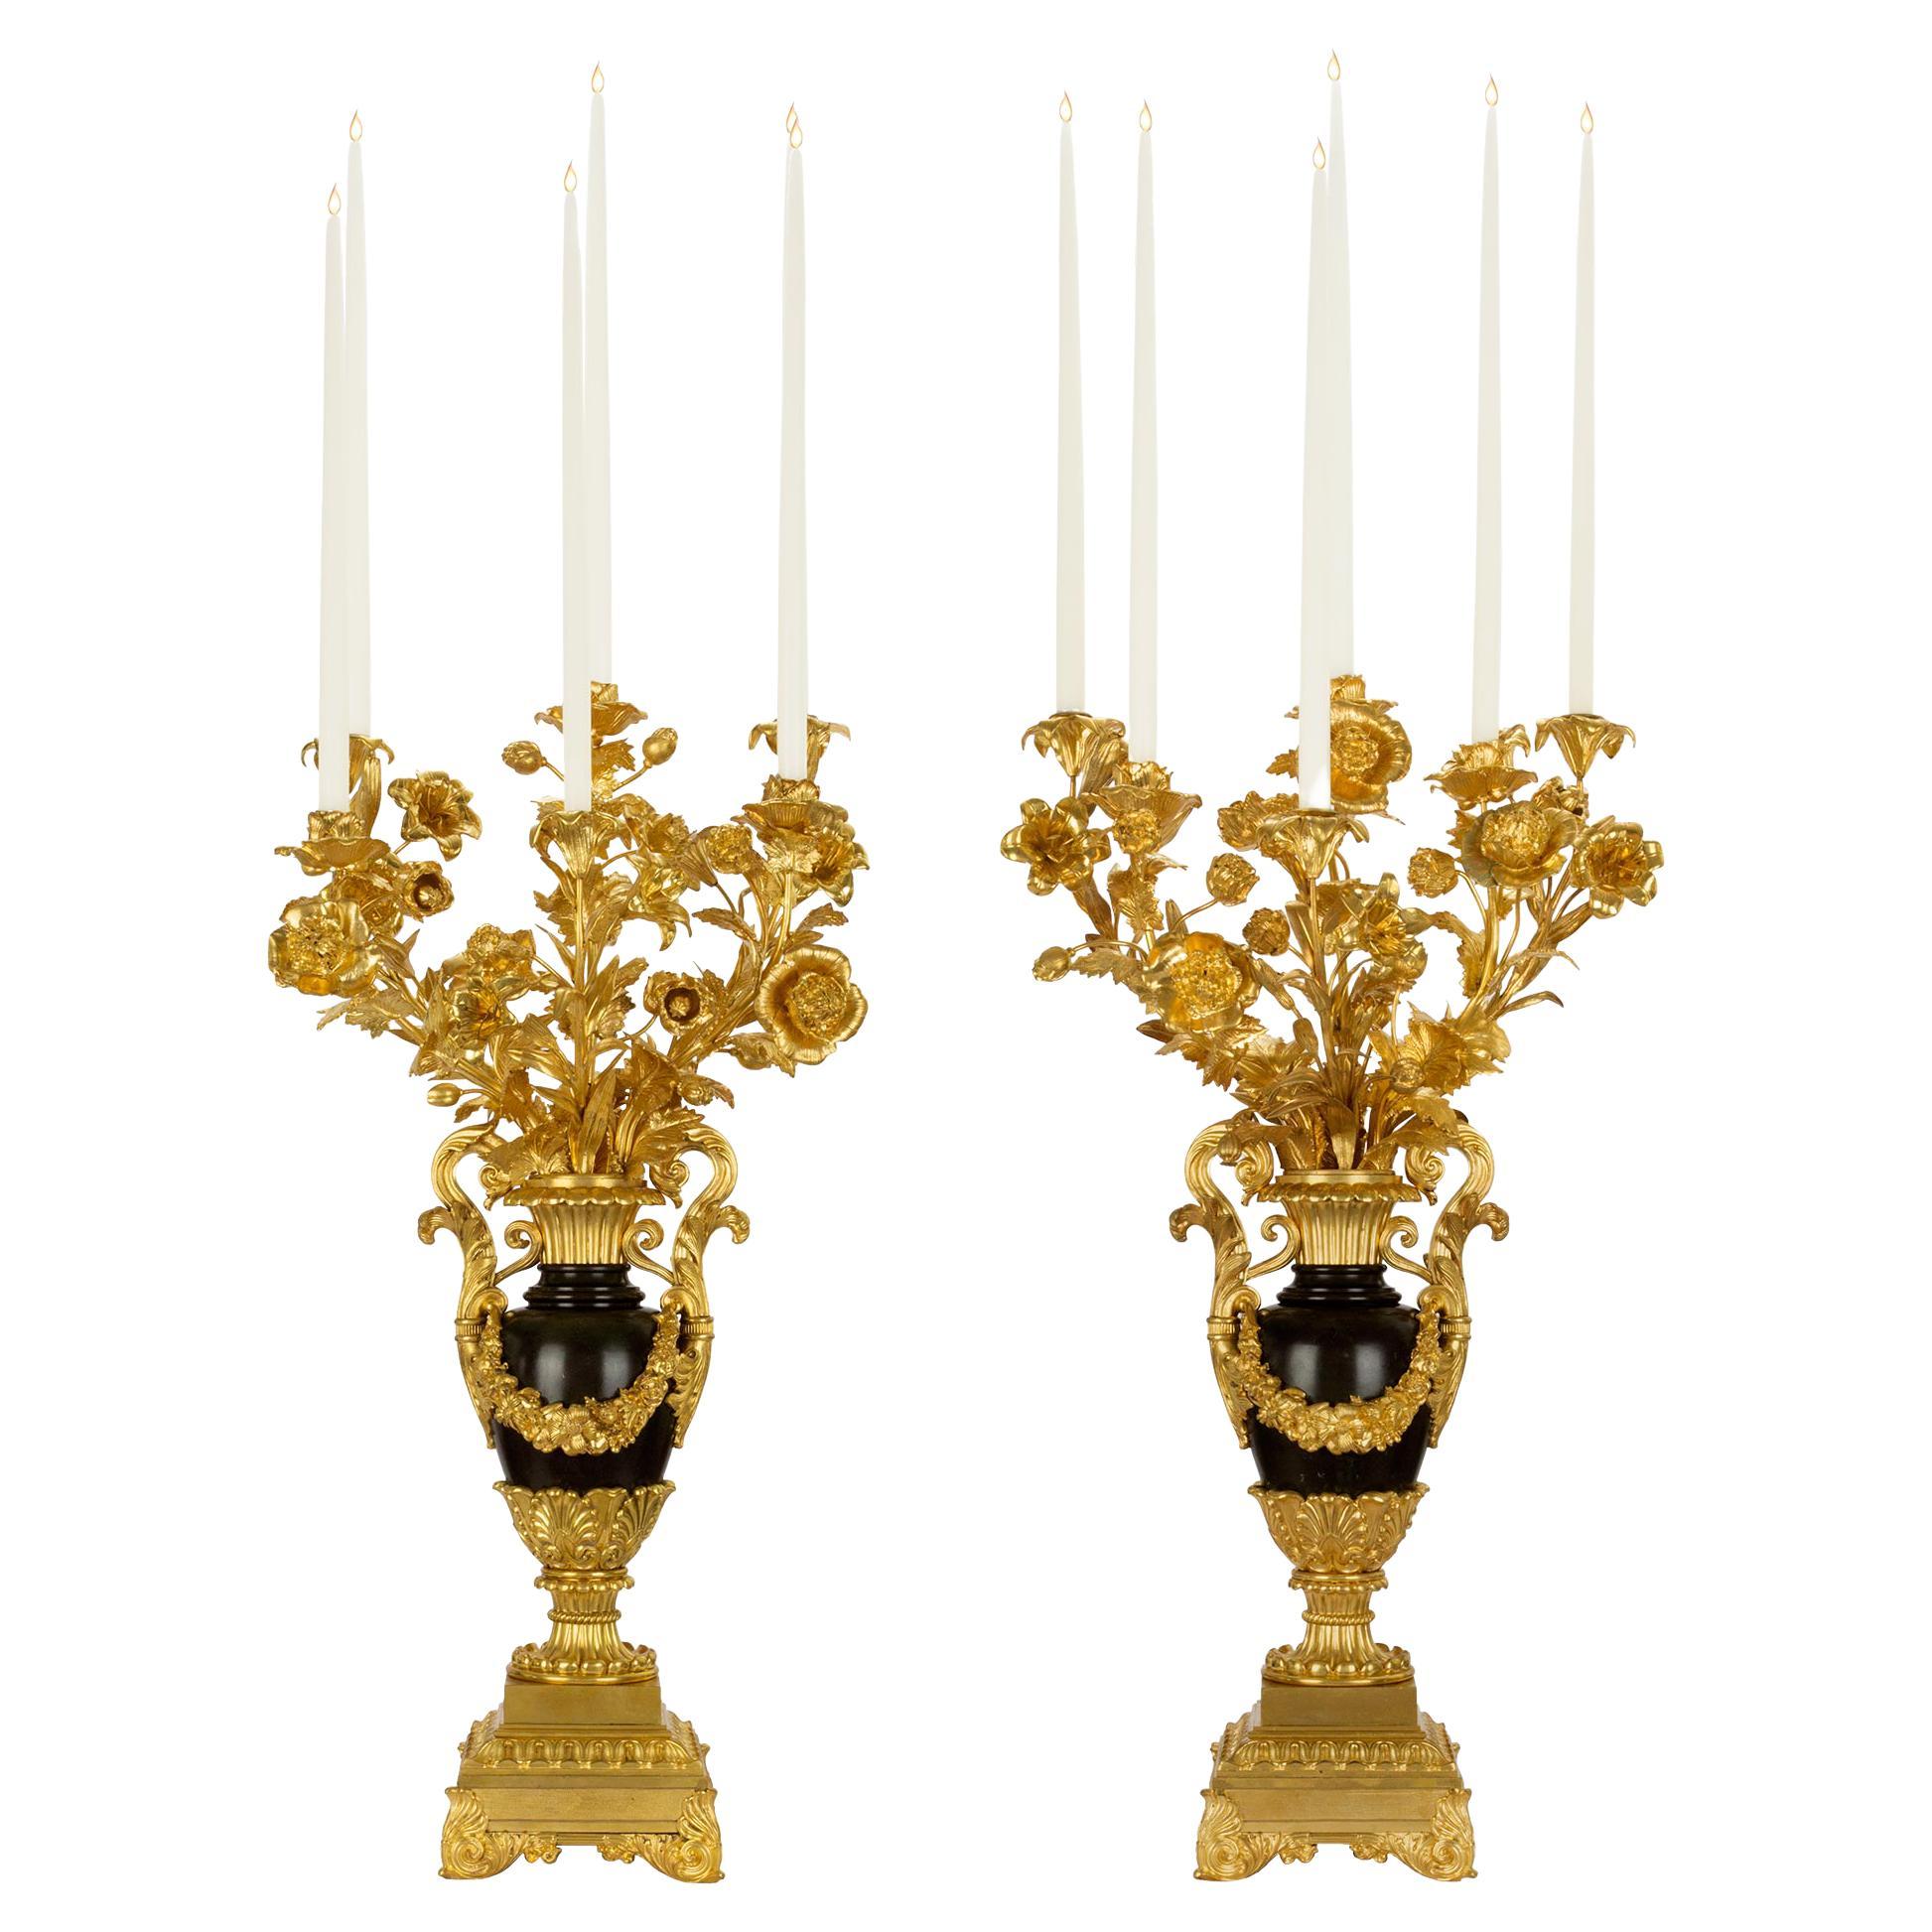 Paire de candélabres de style Louis Philippe du milieu du XIXe siècle français